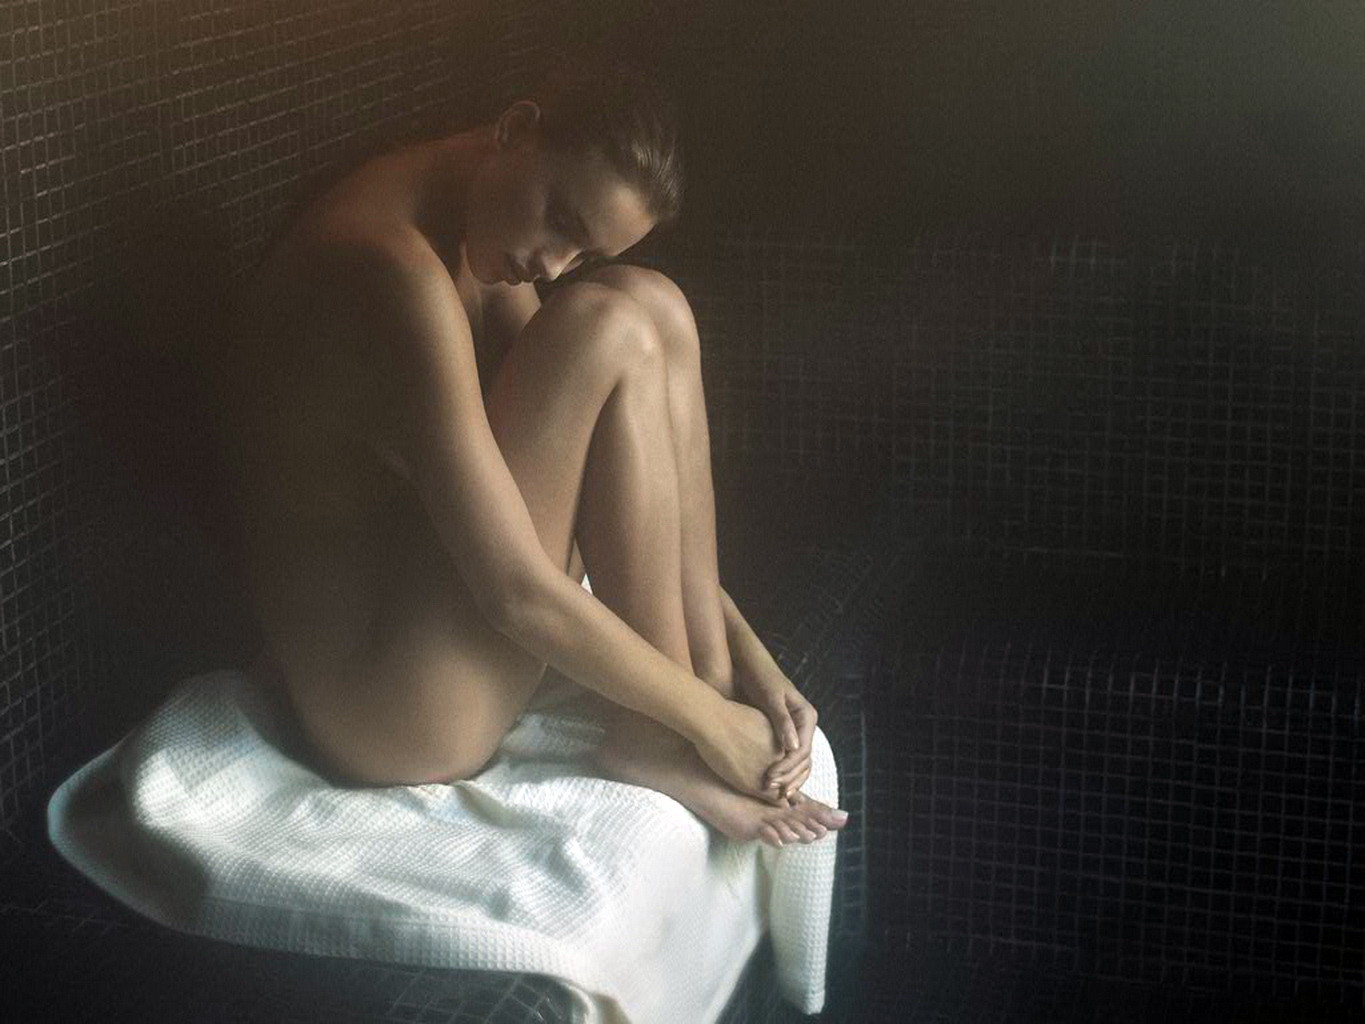 Irina shayk nackt aber versteckt für germaine de cappuccini xperience photoshoot
 #75326520